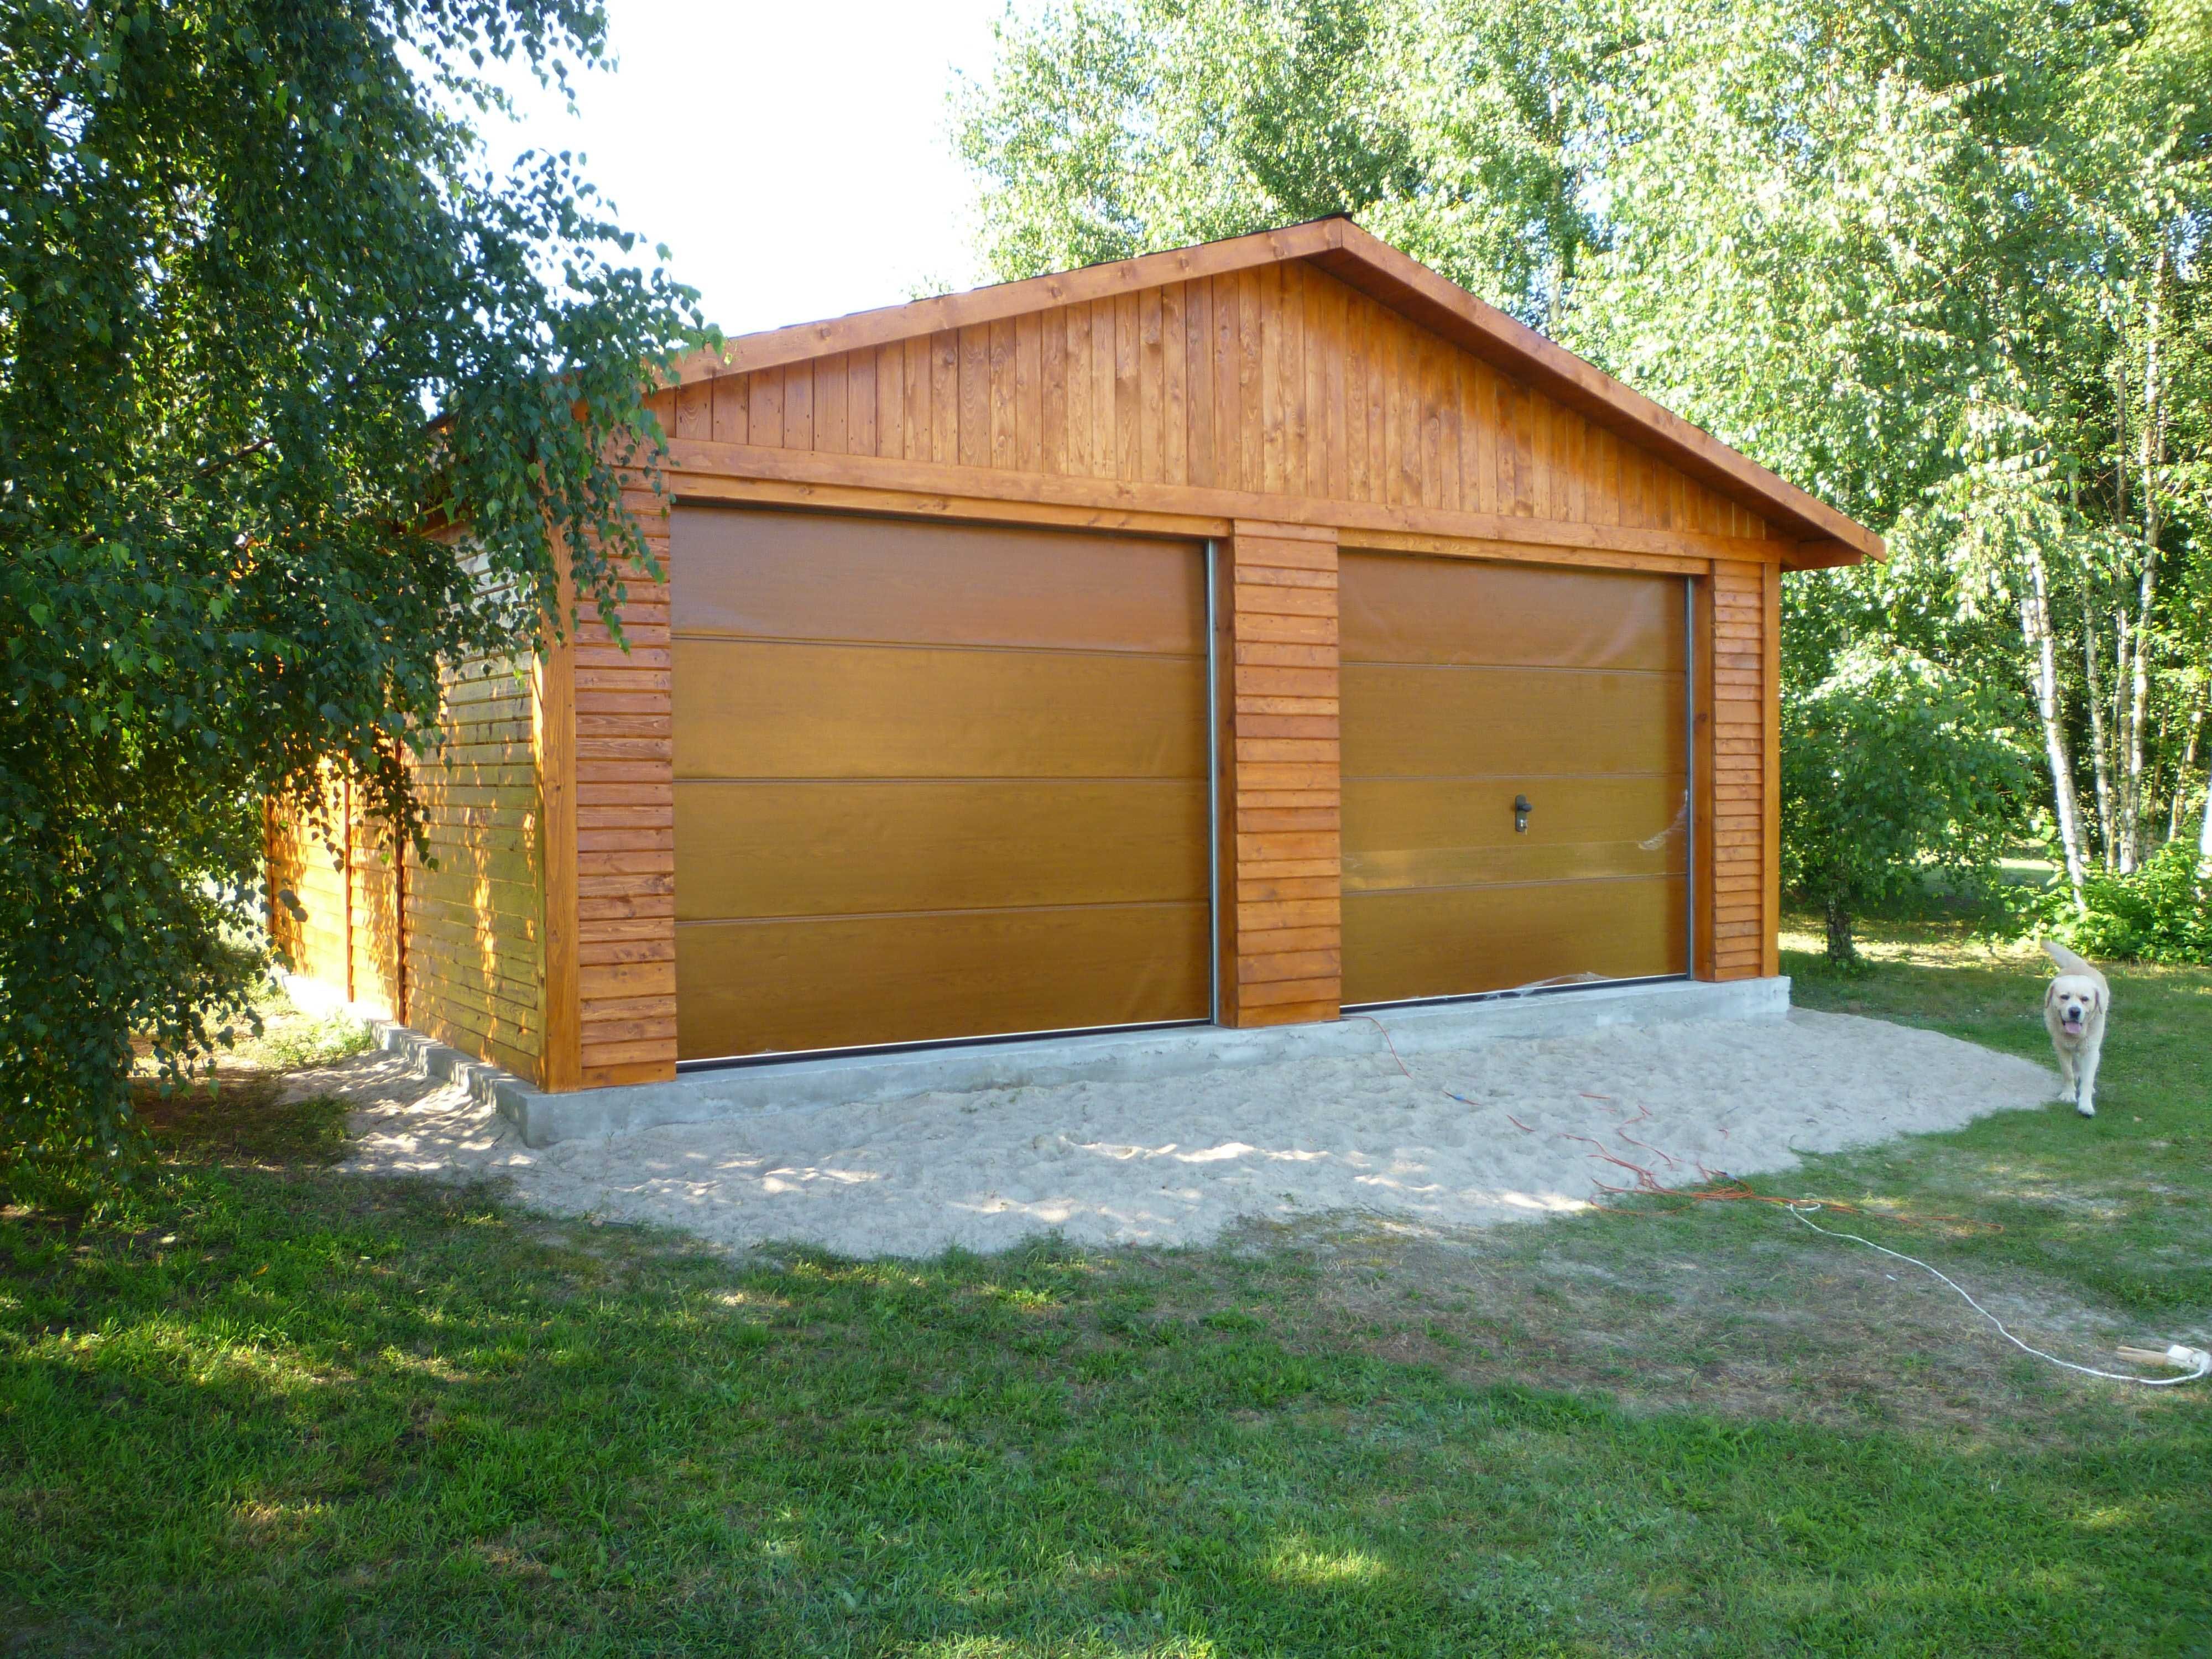 Garaż drewniany dwustanowiskowy Wiata samochodowa CARPORT Altana Domek